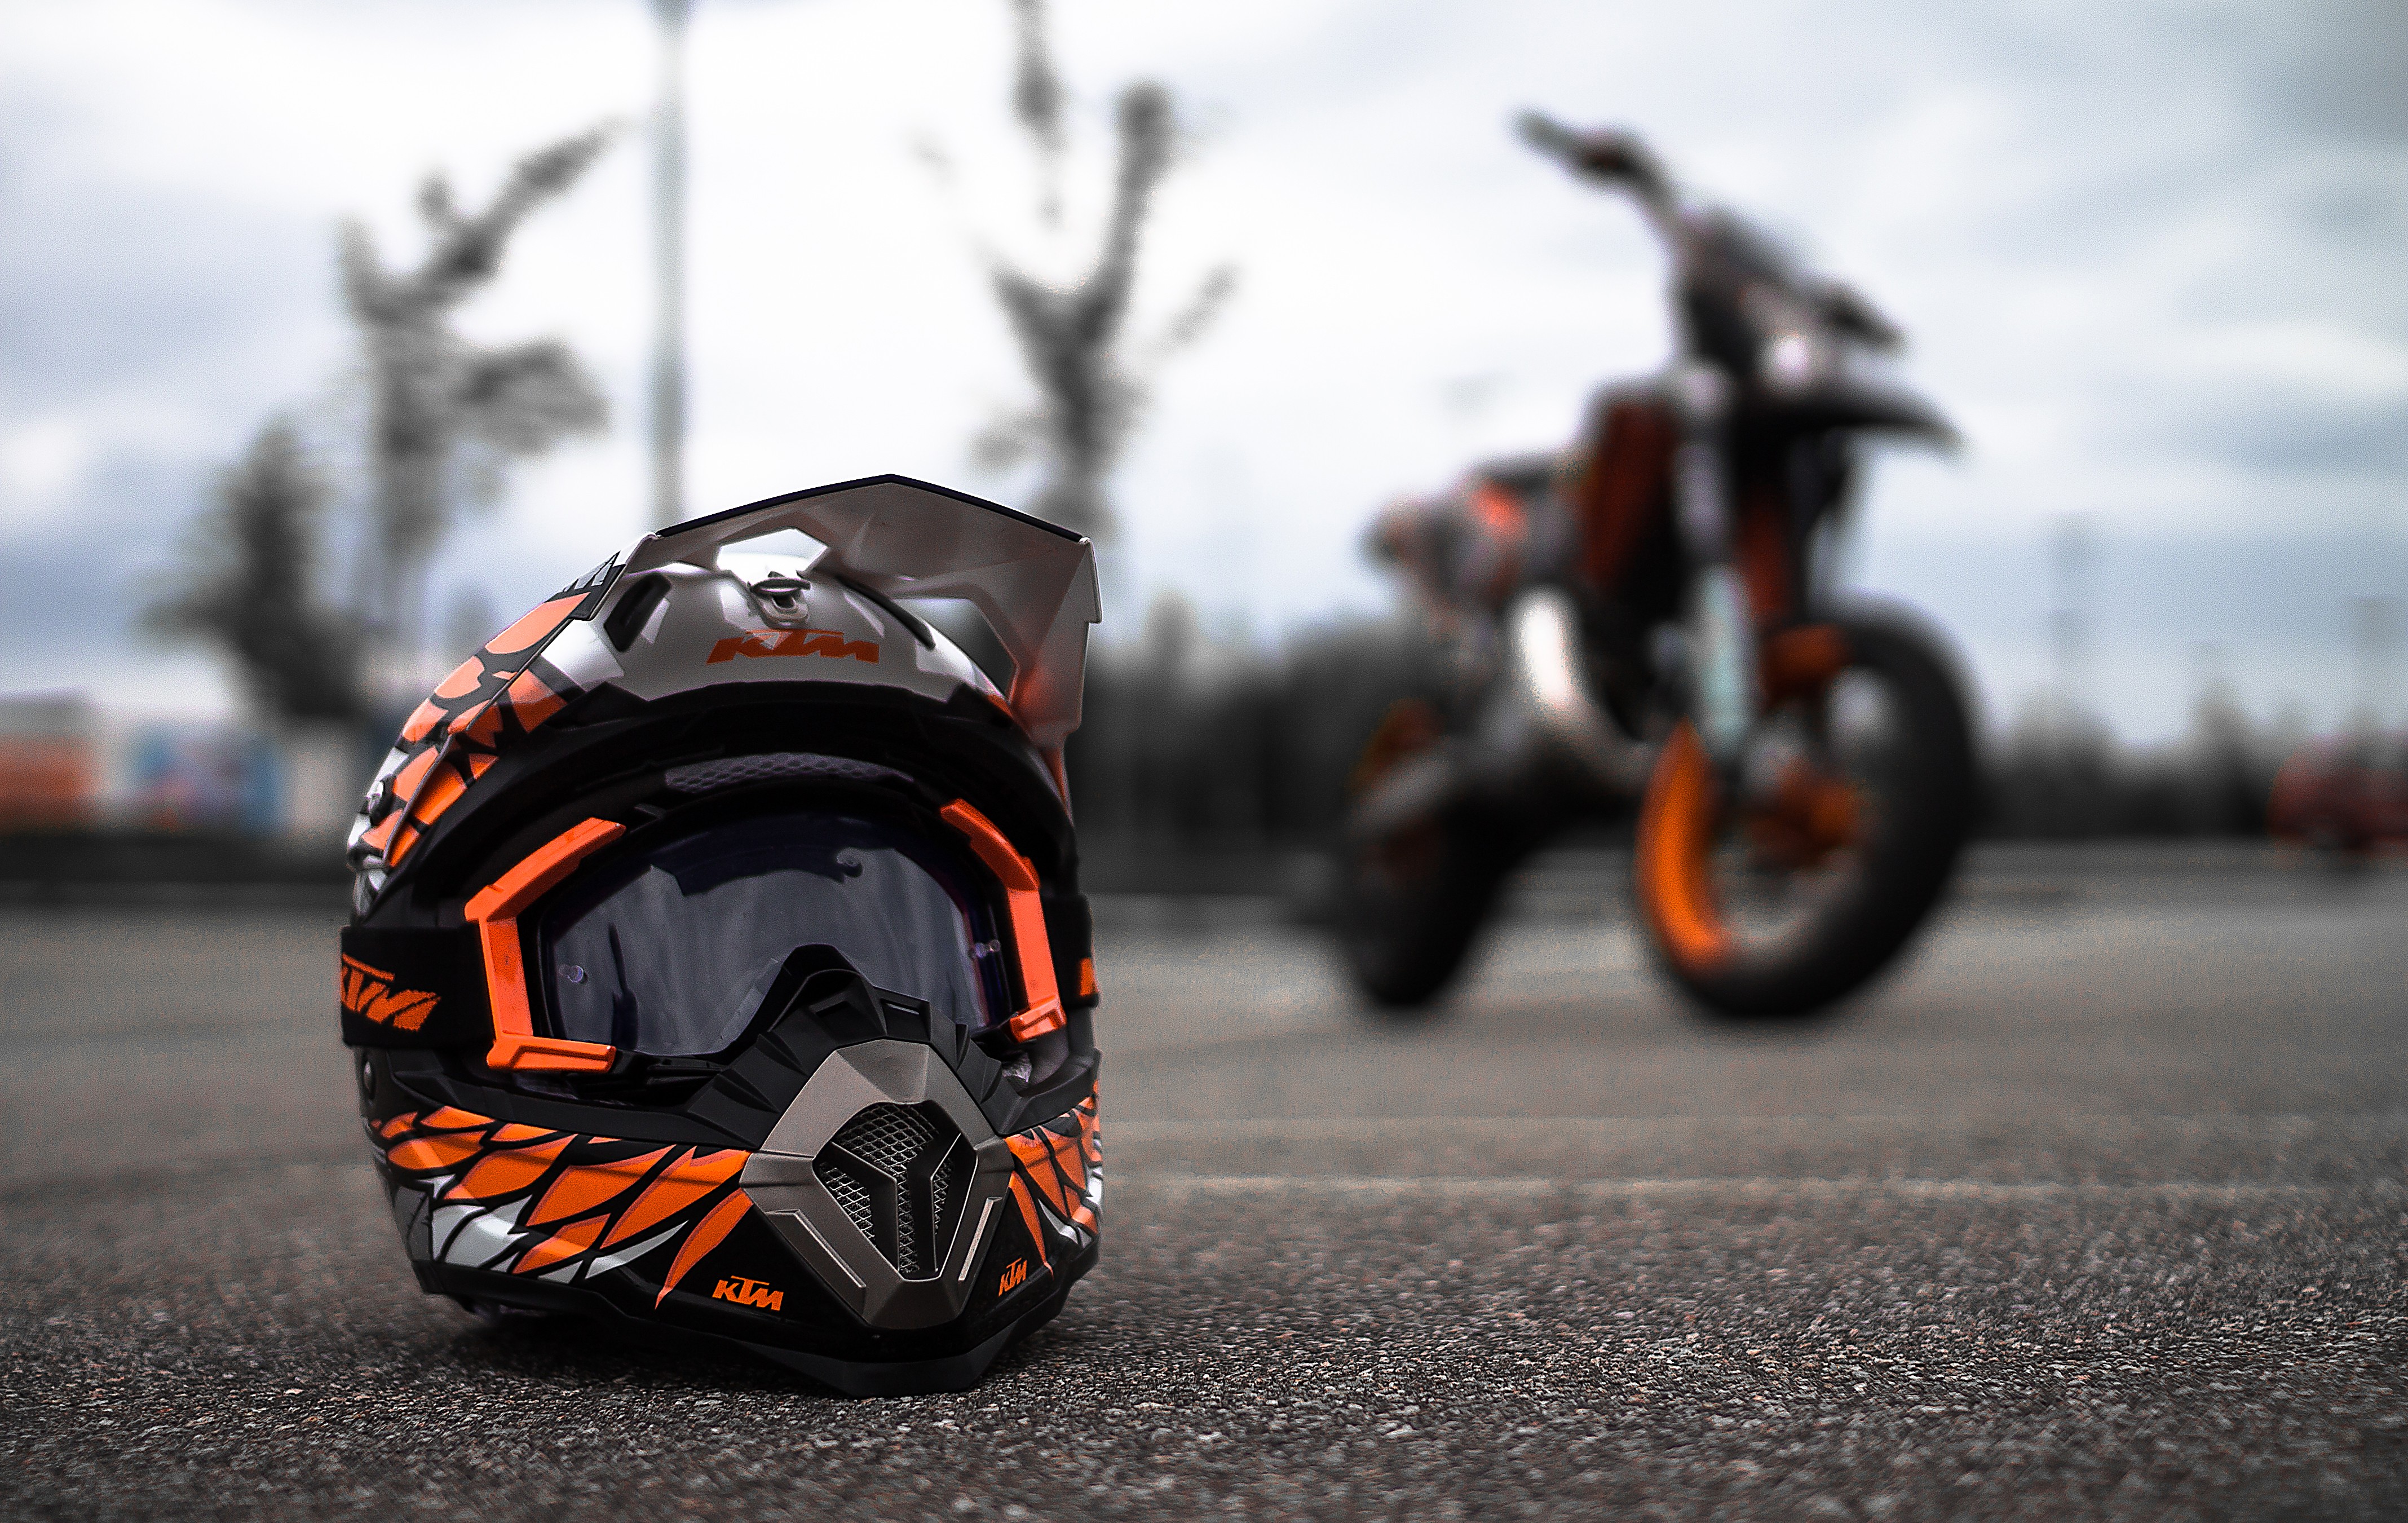 ktm fond d'écran full hd,casque,casque de moto,moto,faire de la moto,équipement de protection individuelle